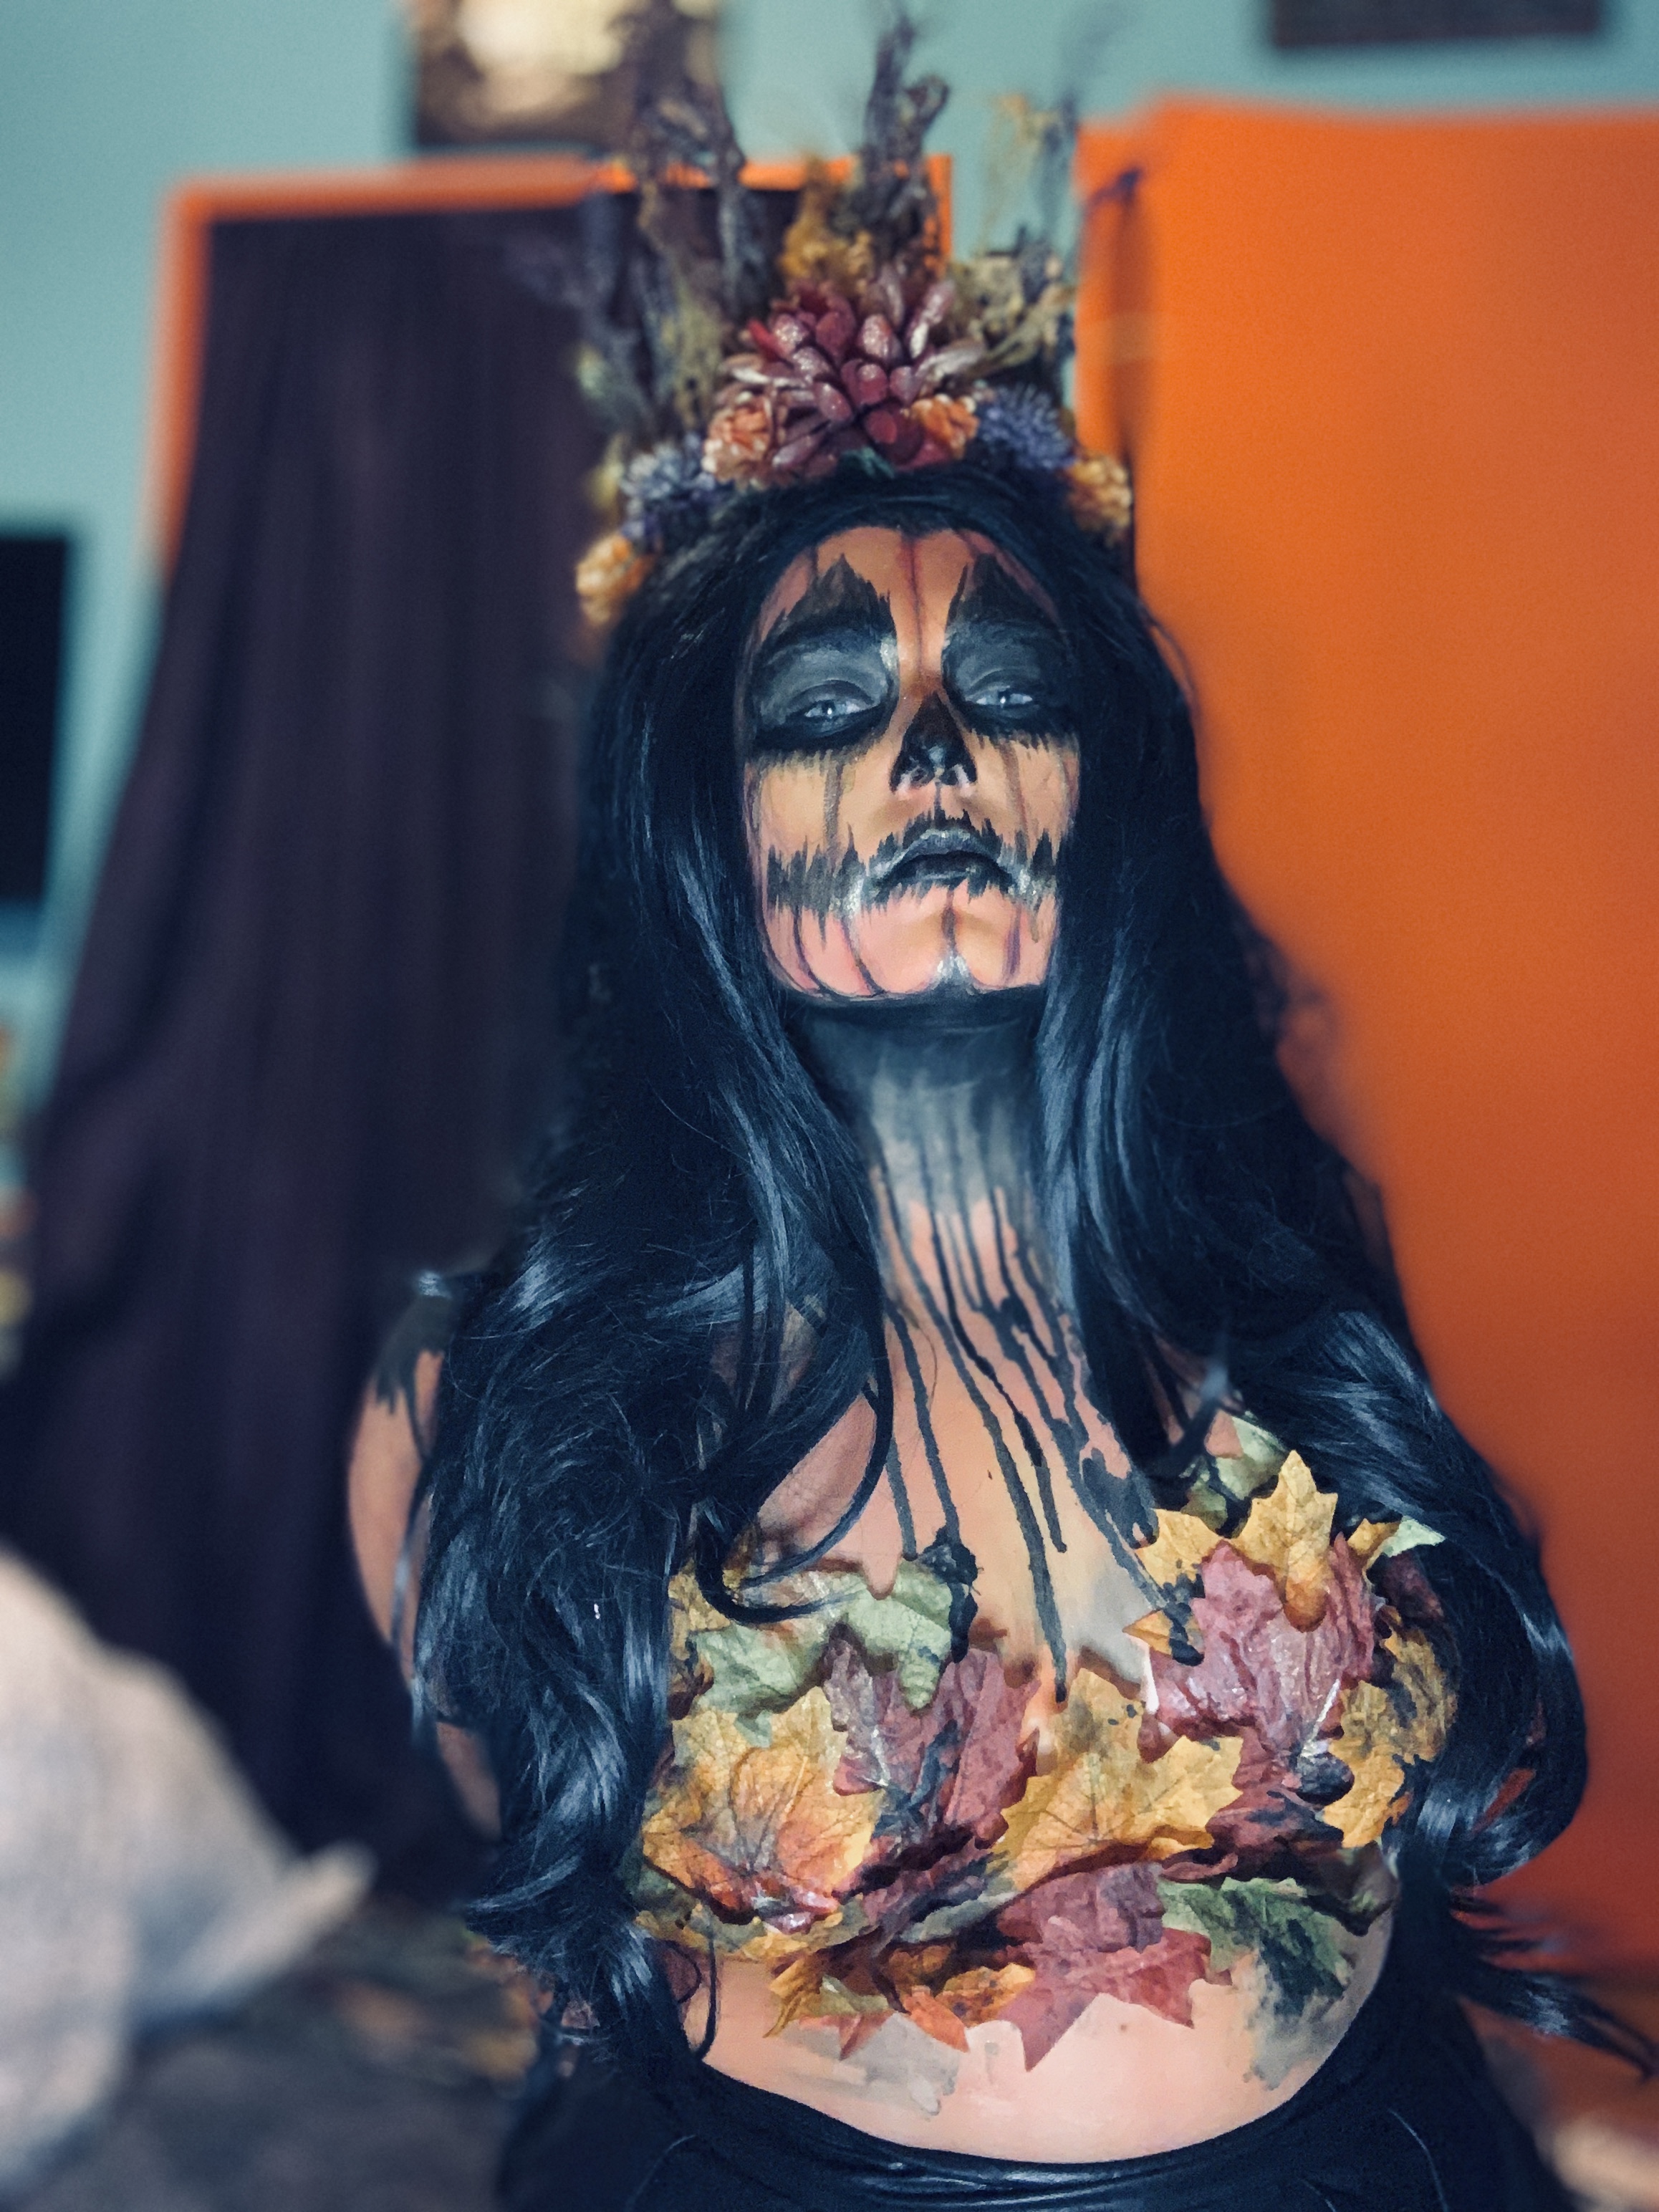 demon-inspired makeup looks for Halloween